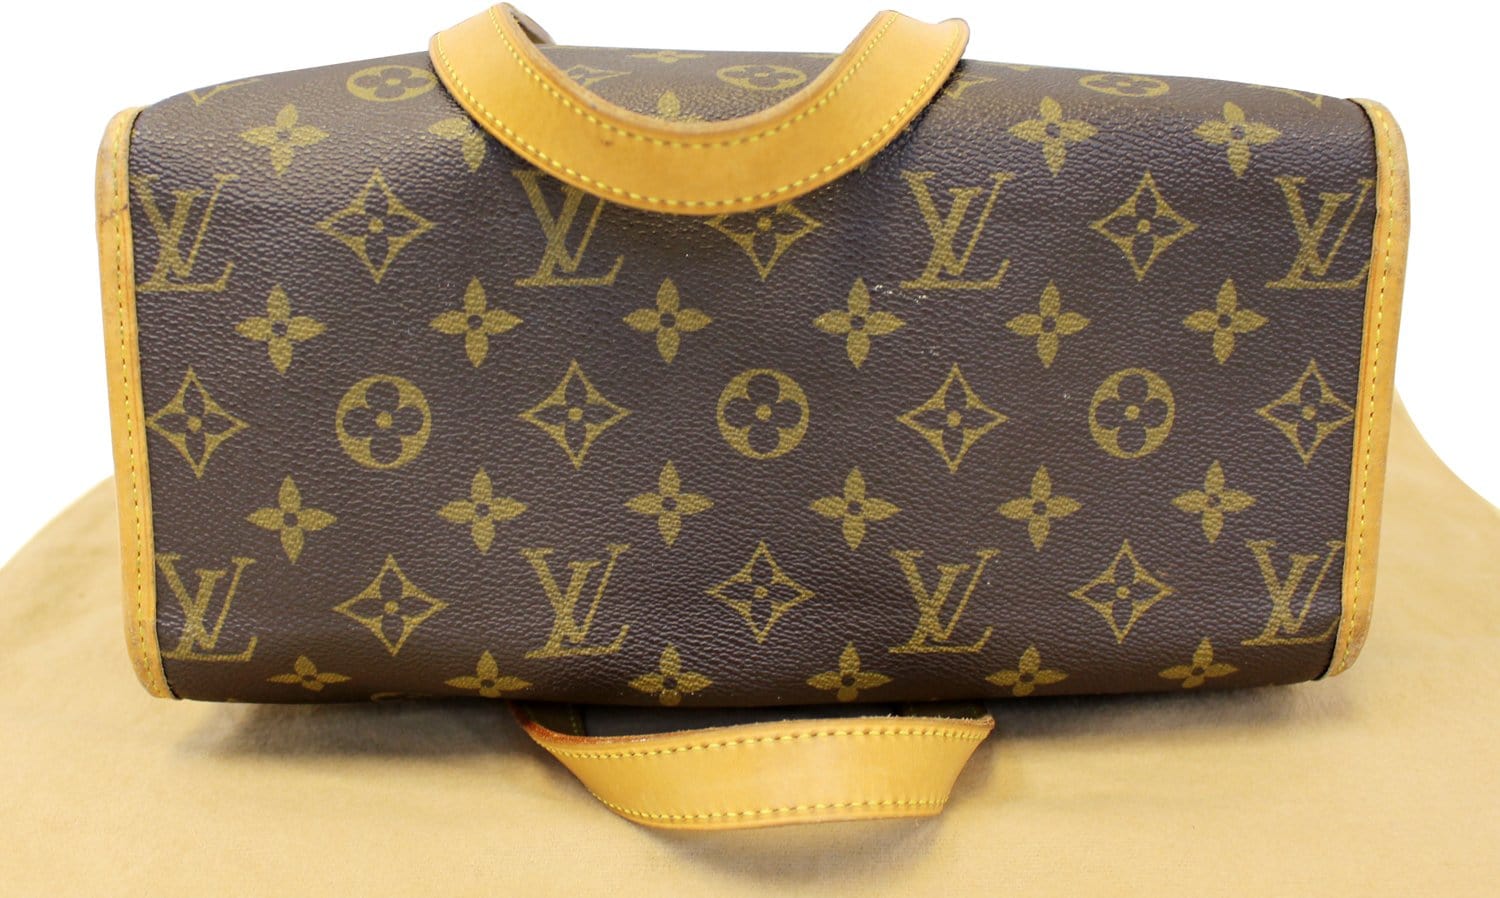 Louis Vuitton 2005 pre-owned Popincourt Ron Monogram Shoulder Bag - Farfetch